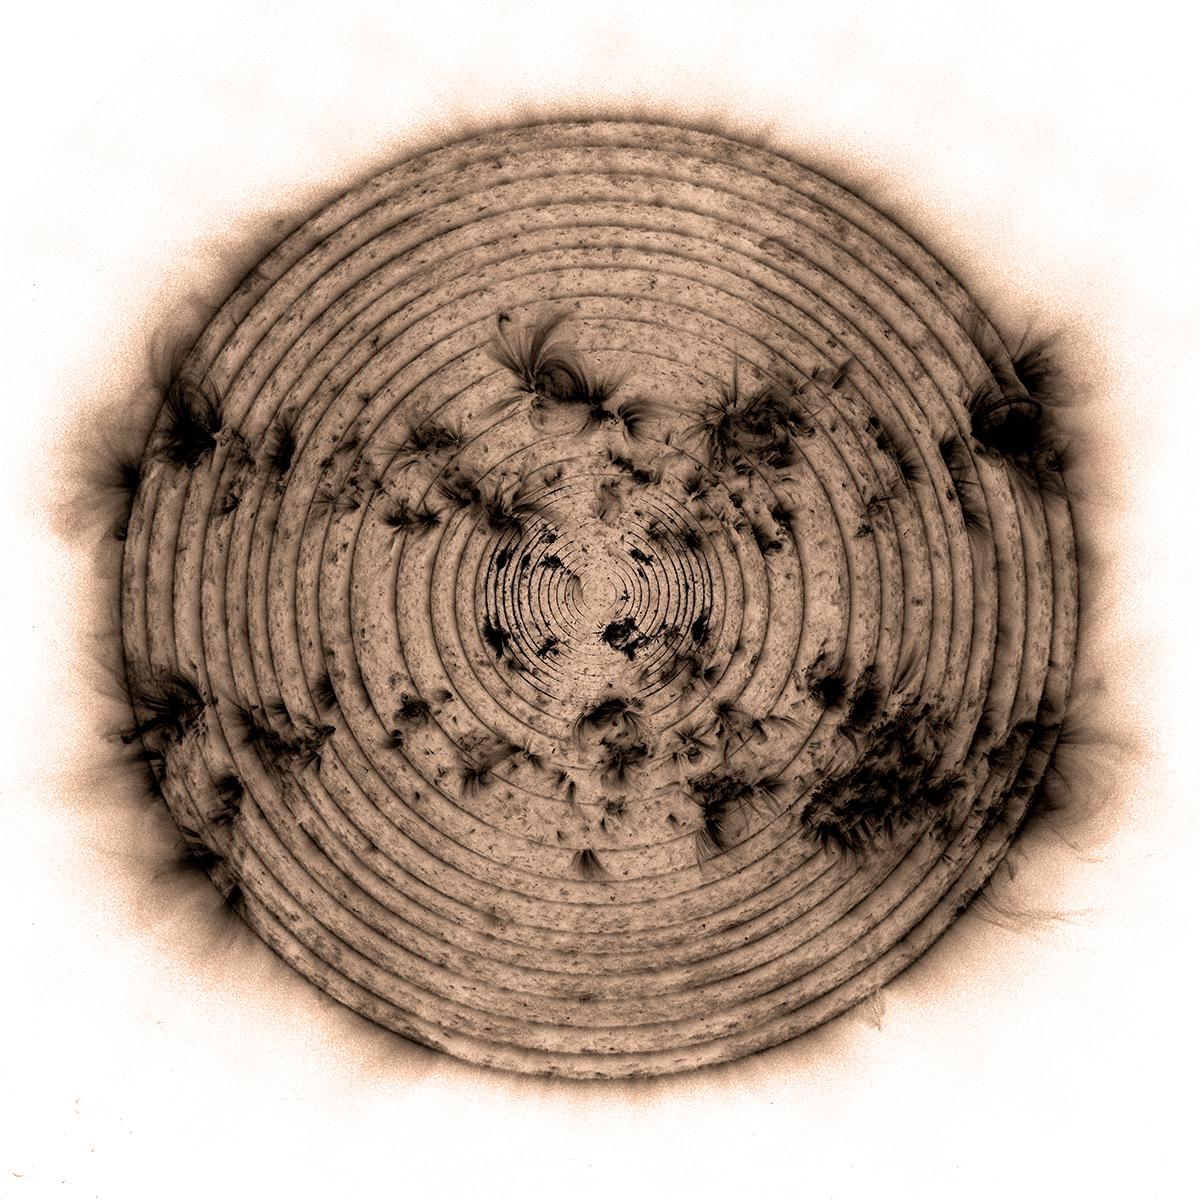 用类似树木年轮的方式结合太阳周期创造这张构图特别的图像。